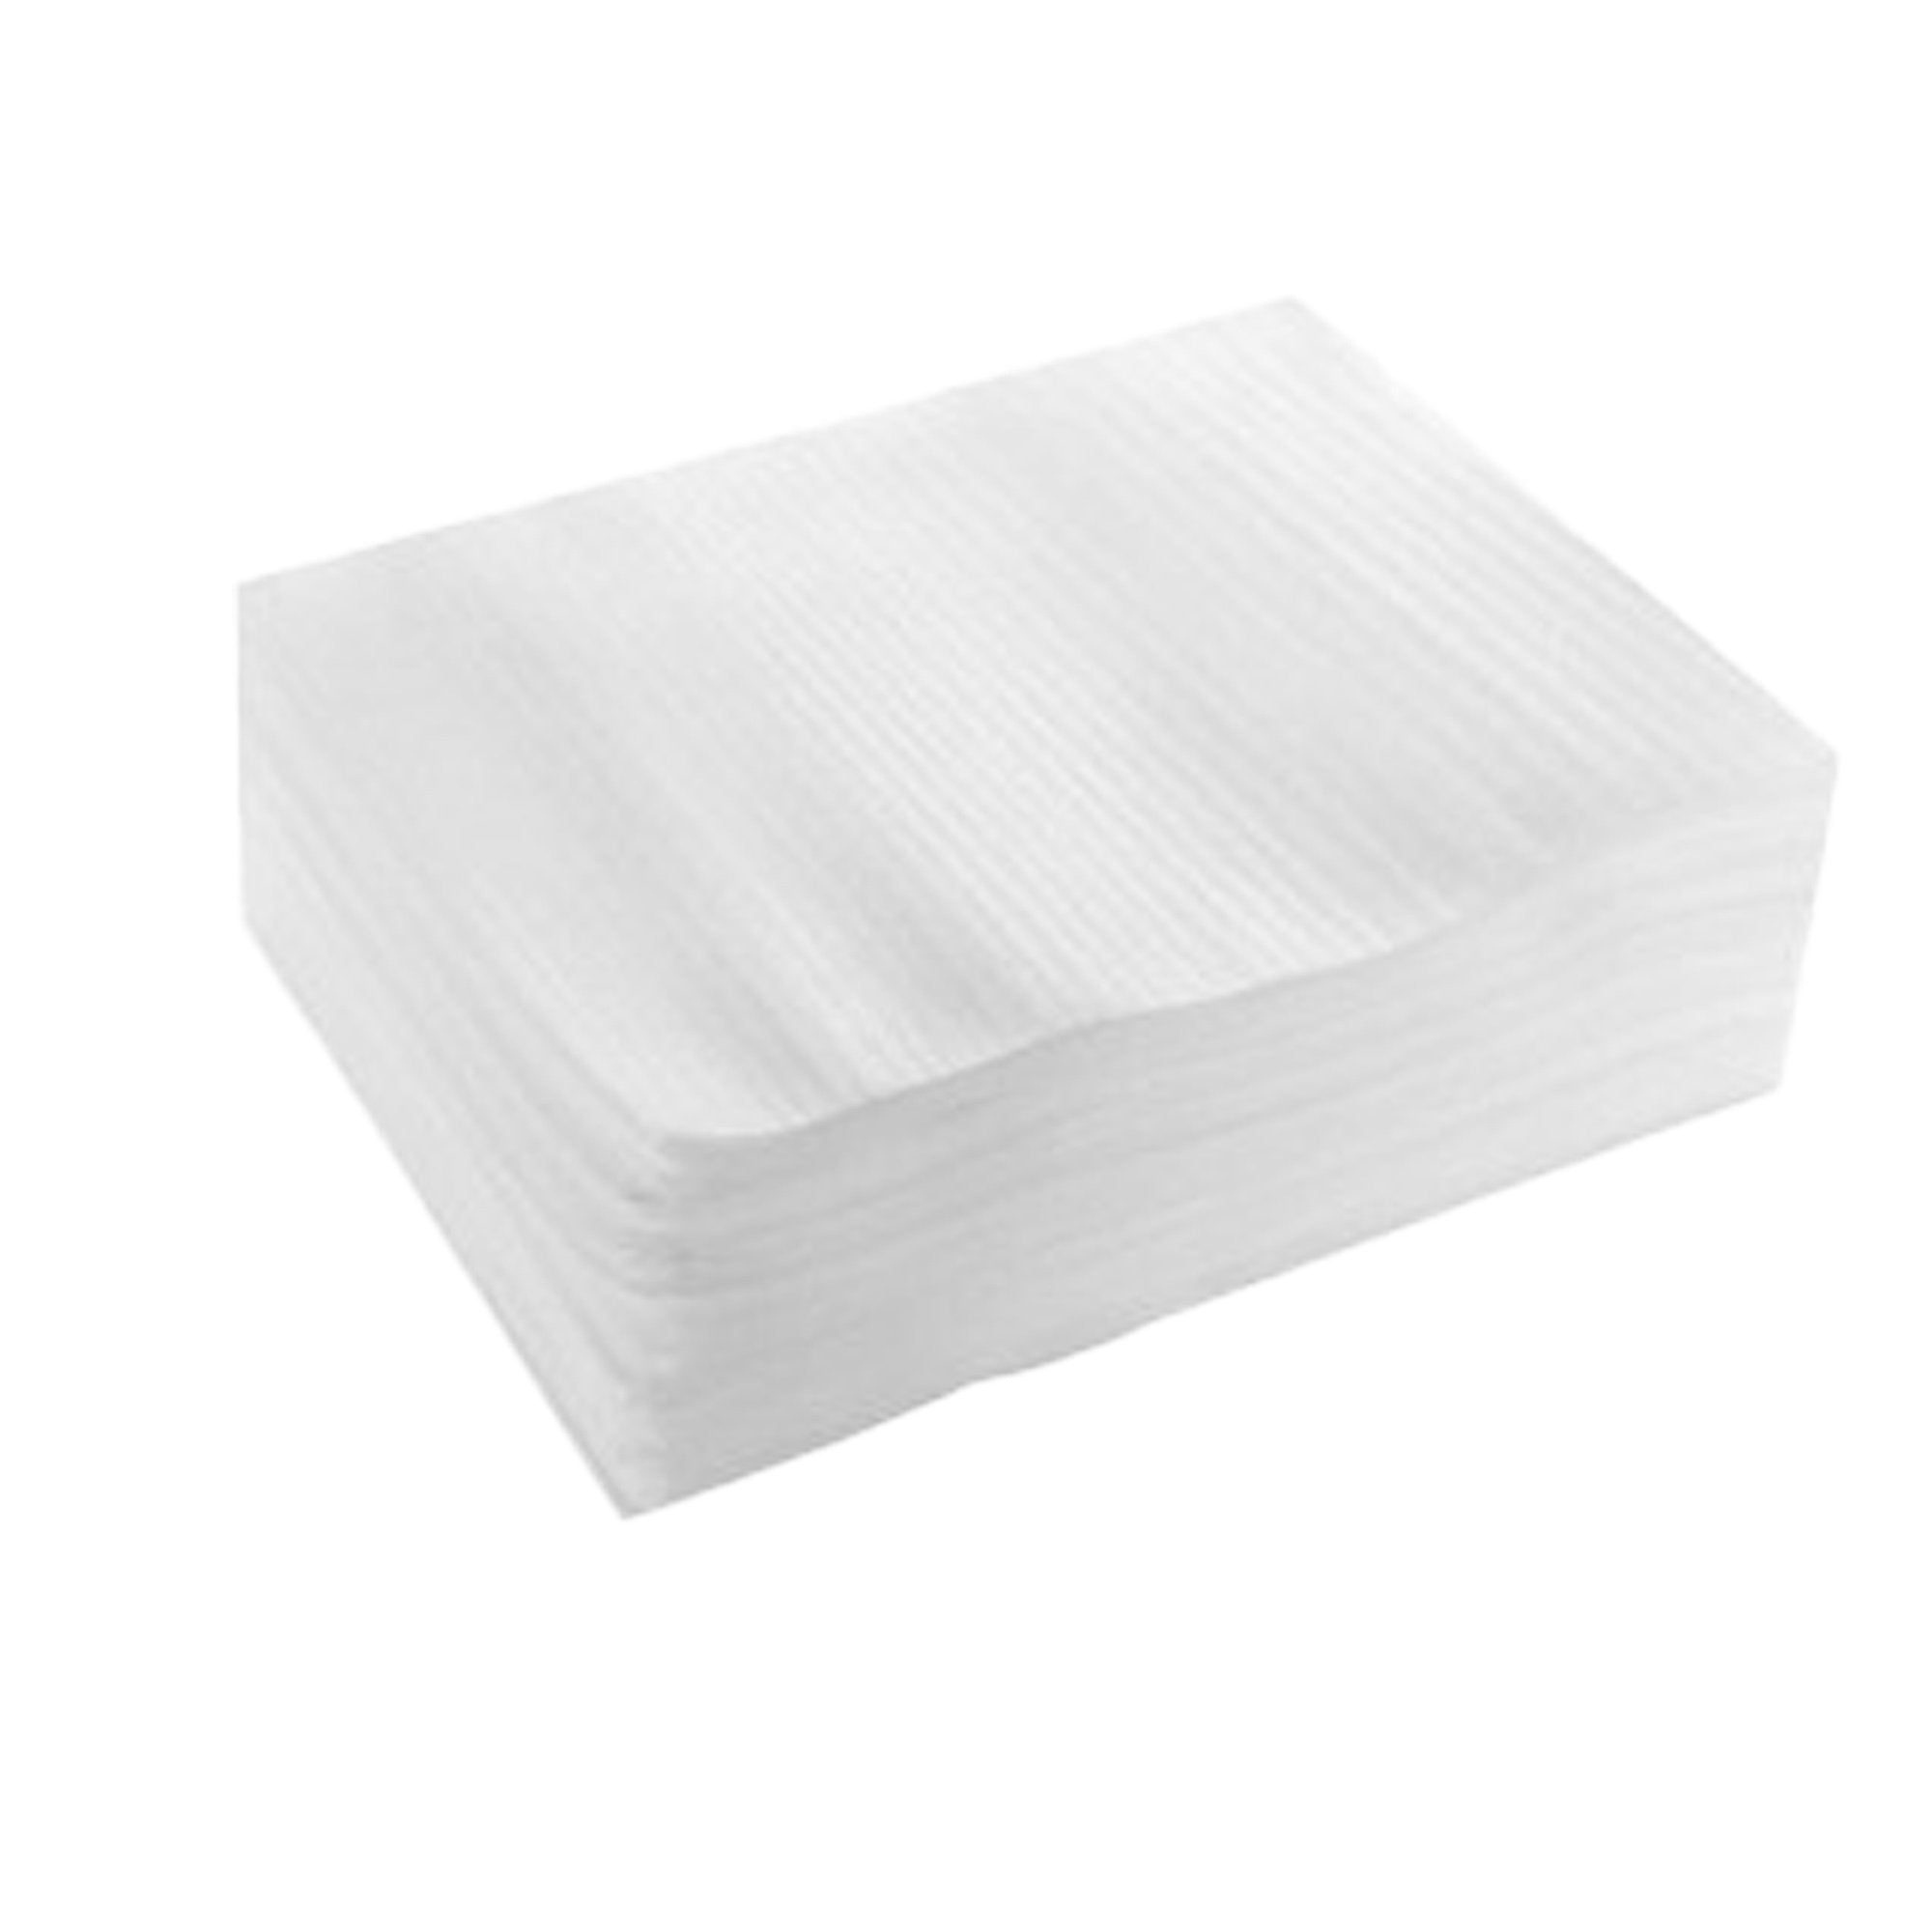 polyedra-conf-100-sacchetti-schiuma-foam-imballaggio-25x30cm